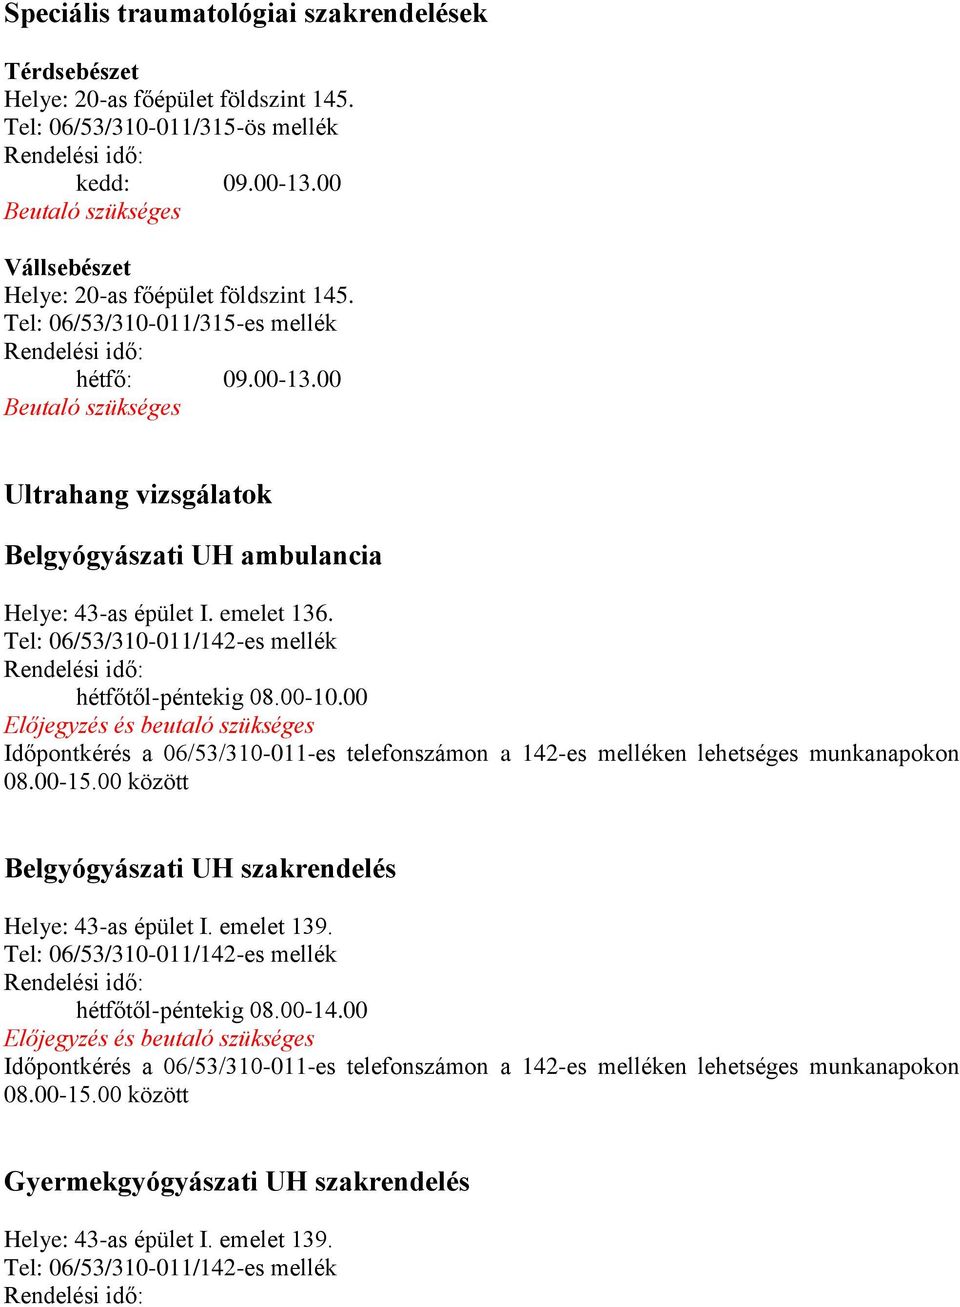 00 Beutaló szükséges Ultrahang vizsgálatok Belgyógyászati UH ambulancia Helye: 43-as épület I. emelet 136. Tel: 06/53/310-011/142-es mellék hétfőtől-péntekig 08.00-10.